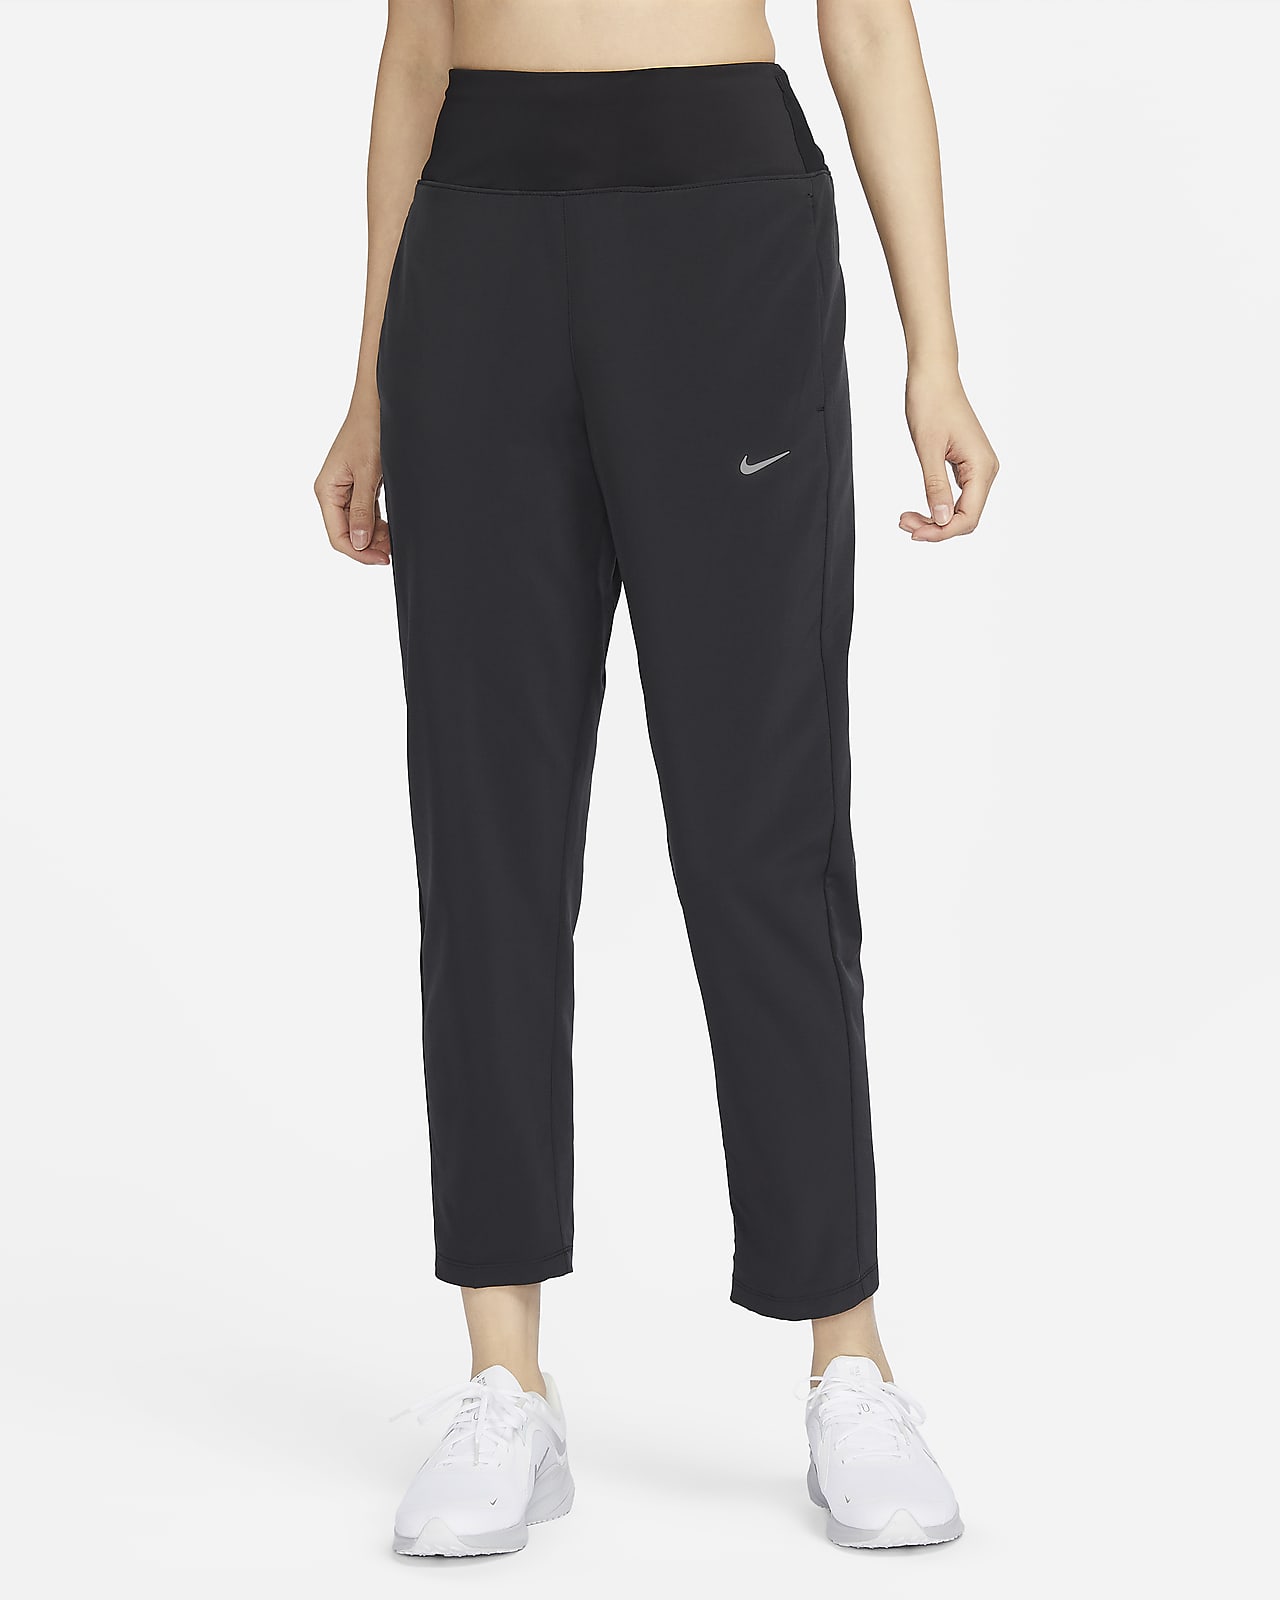 Nike Essential 7/8 Pants Women